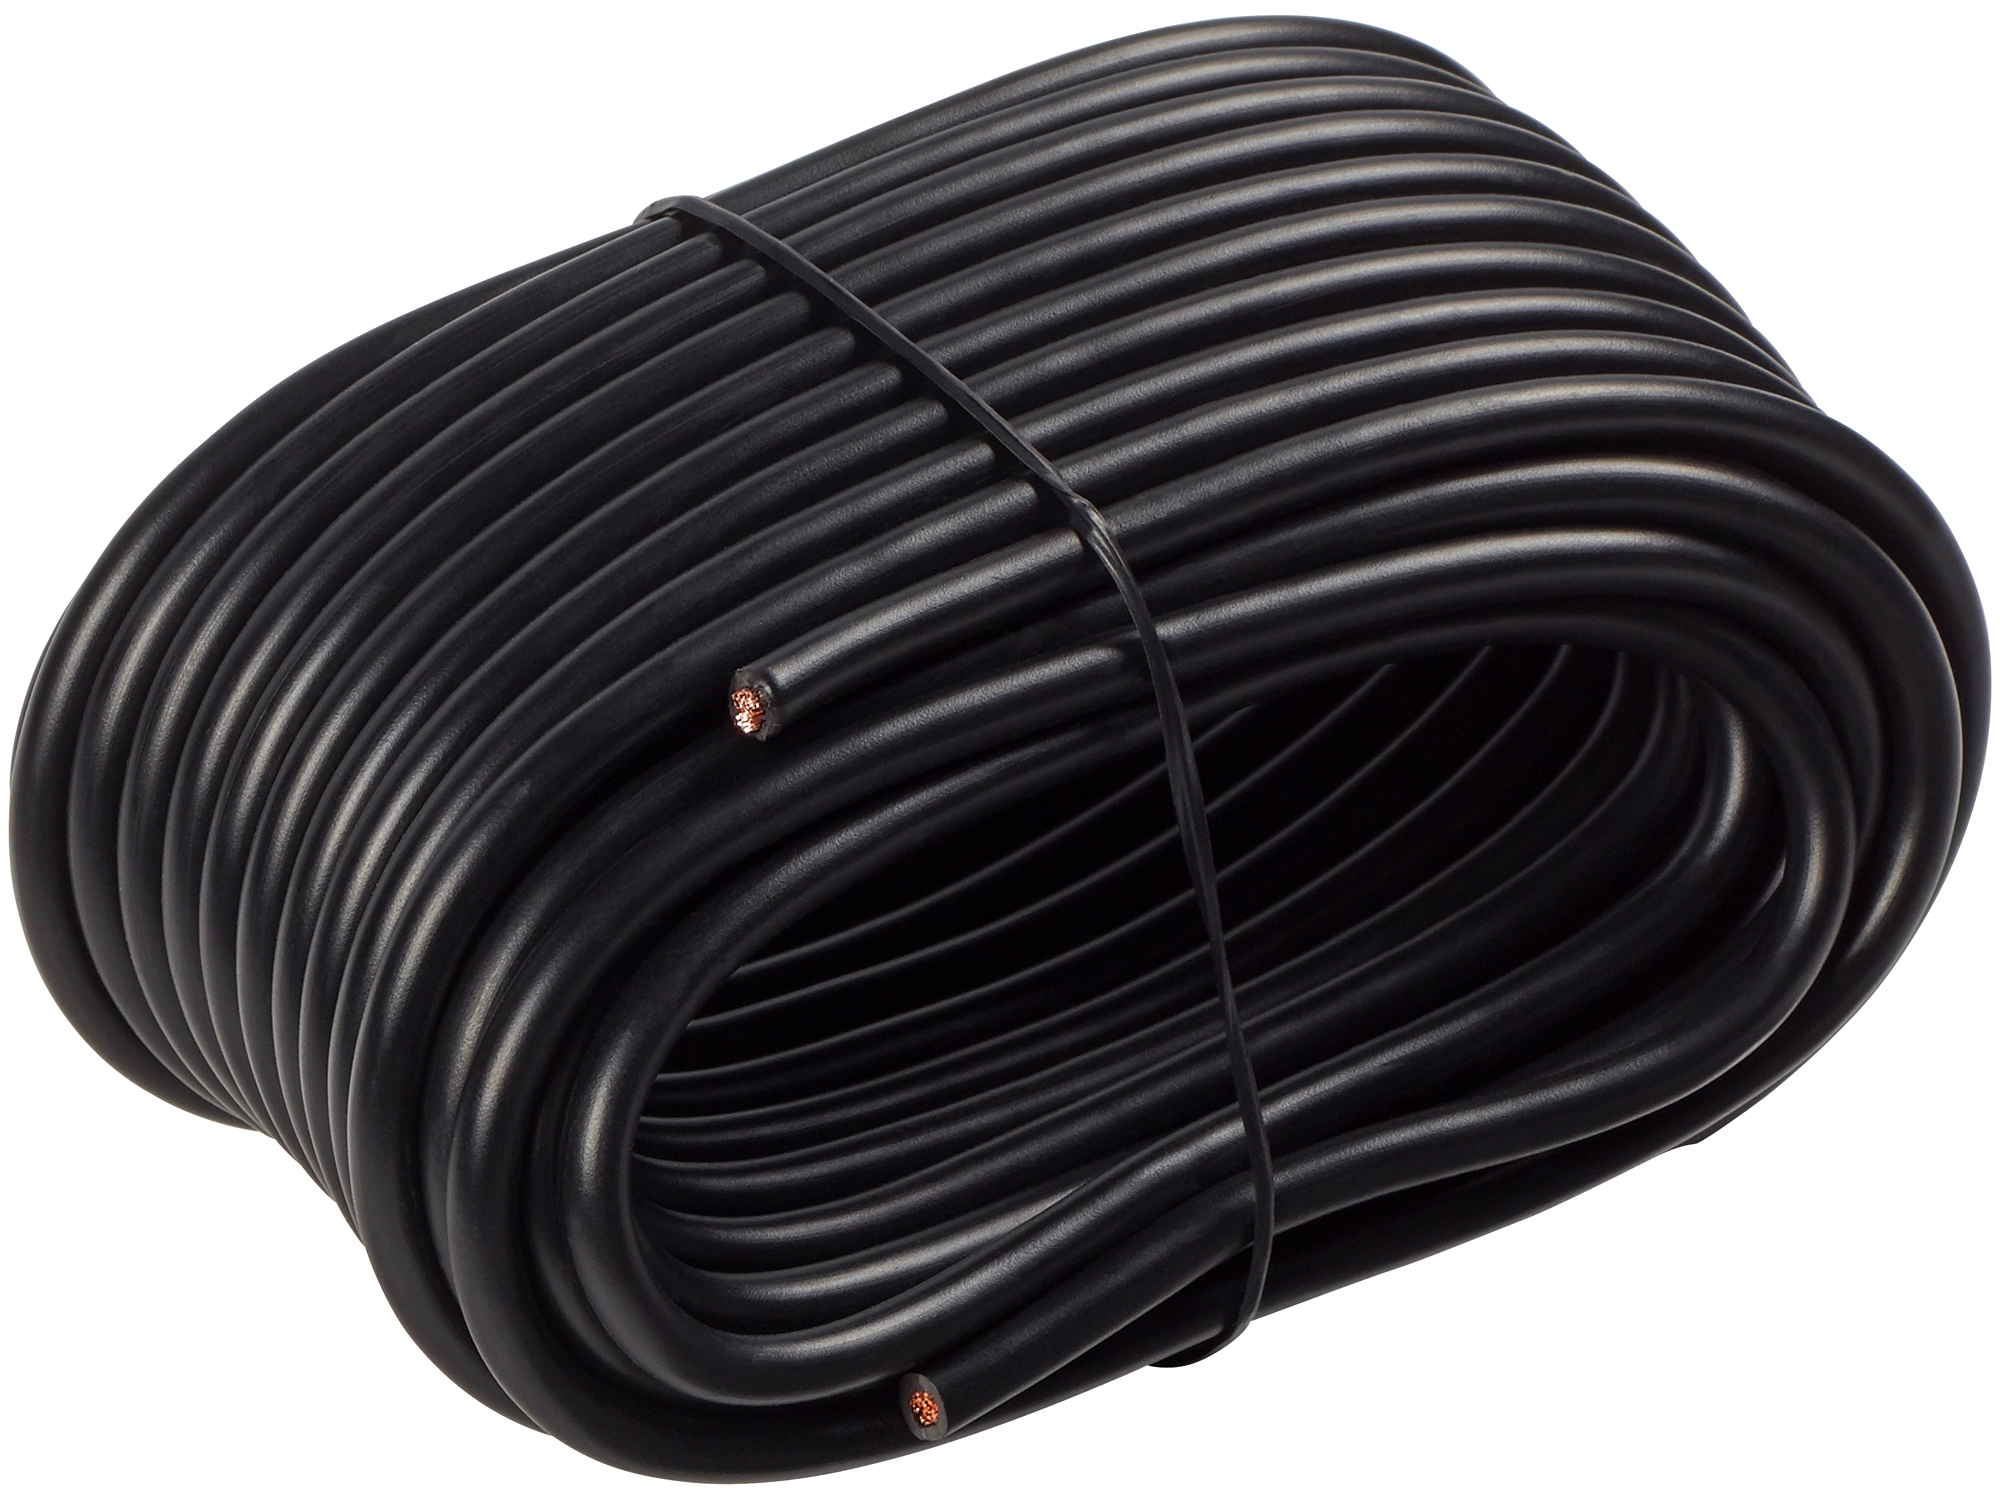 Kfz - Kabel 4 mm², schwarz, 2,20 €